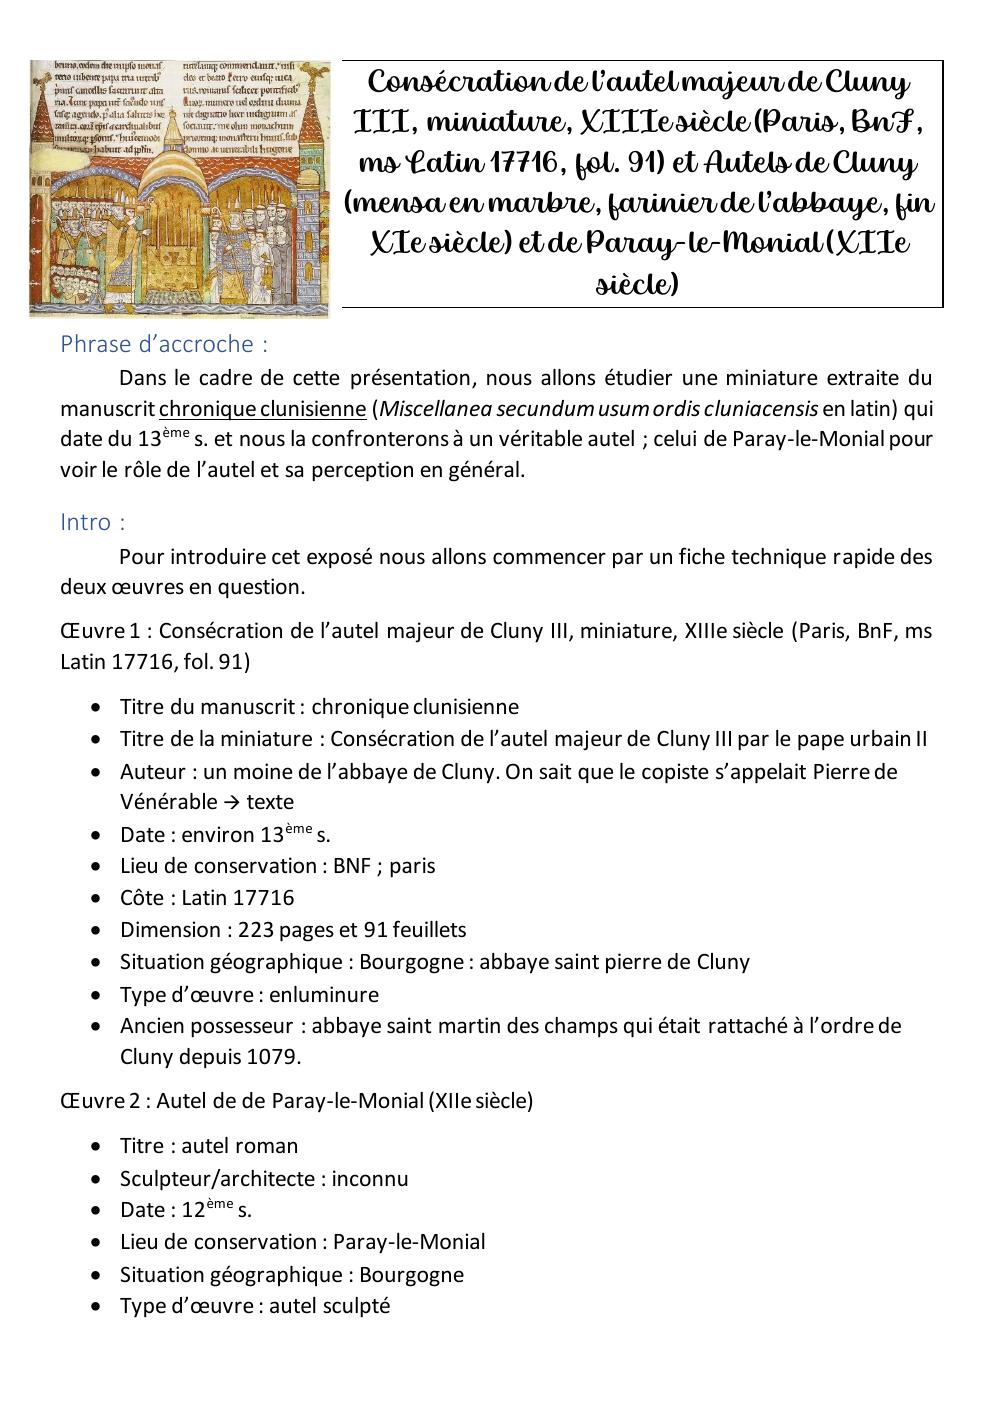 Prévisualisation du document exposé médiéval autel de paray le monial et miniature de la consécration de l'autel de cluny du moyen age